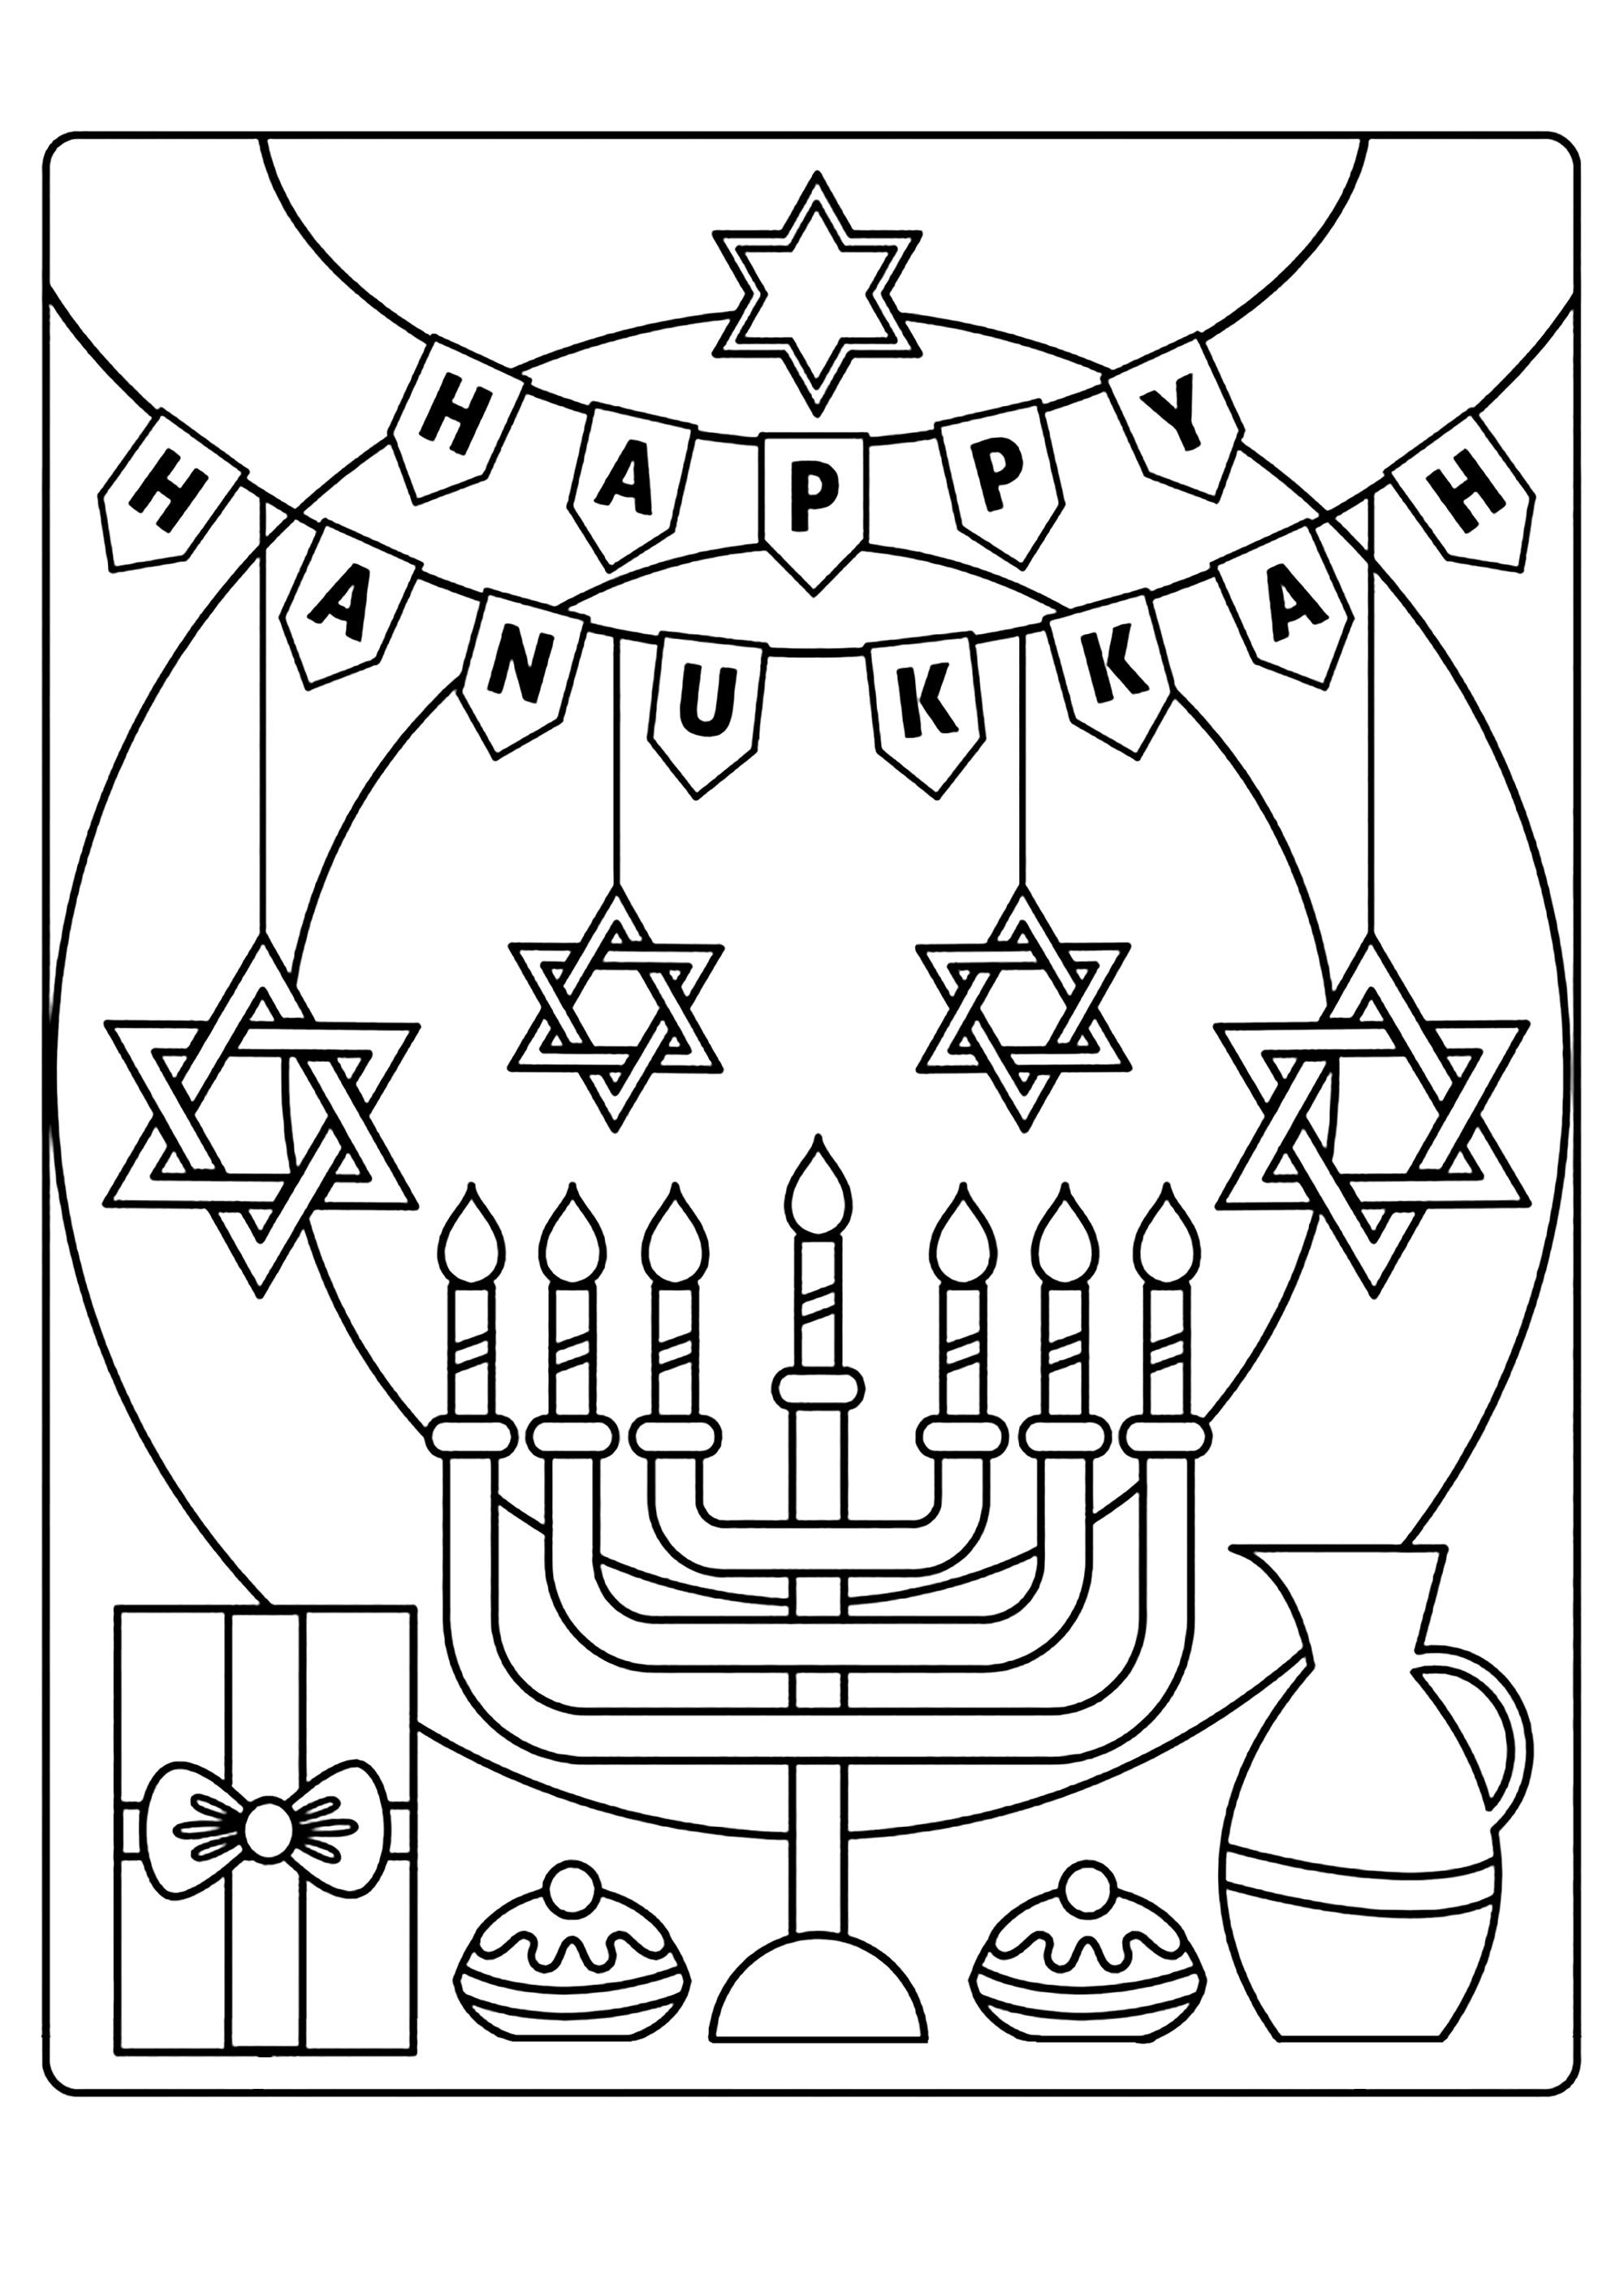 Feliz Hanukkah. O Hanukkah é uma festa judaica de instituição rabínica, que comemora a reinauguração do altar das oferendas no Segundo Templo de Jerusalém.